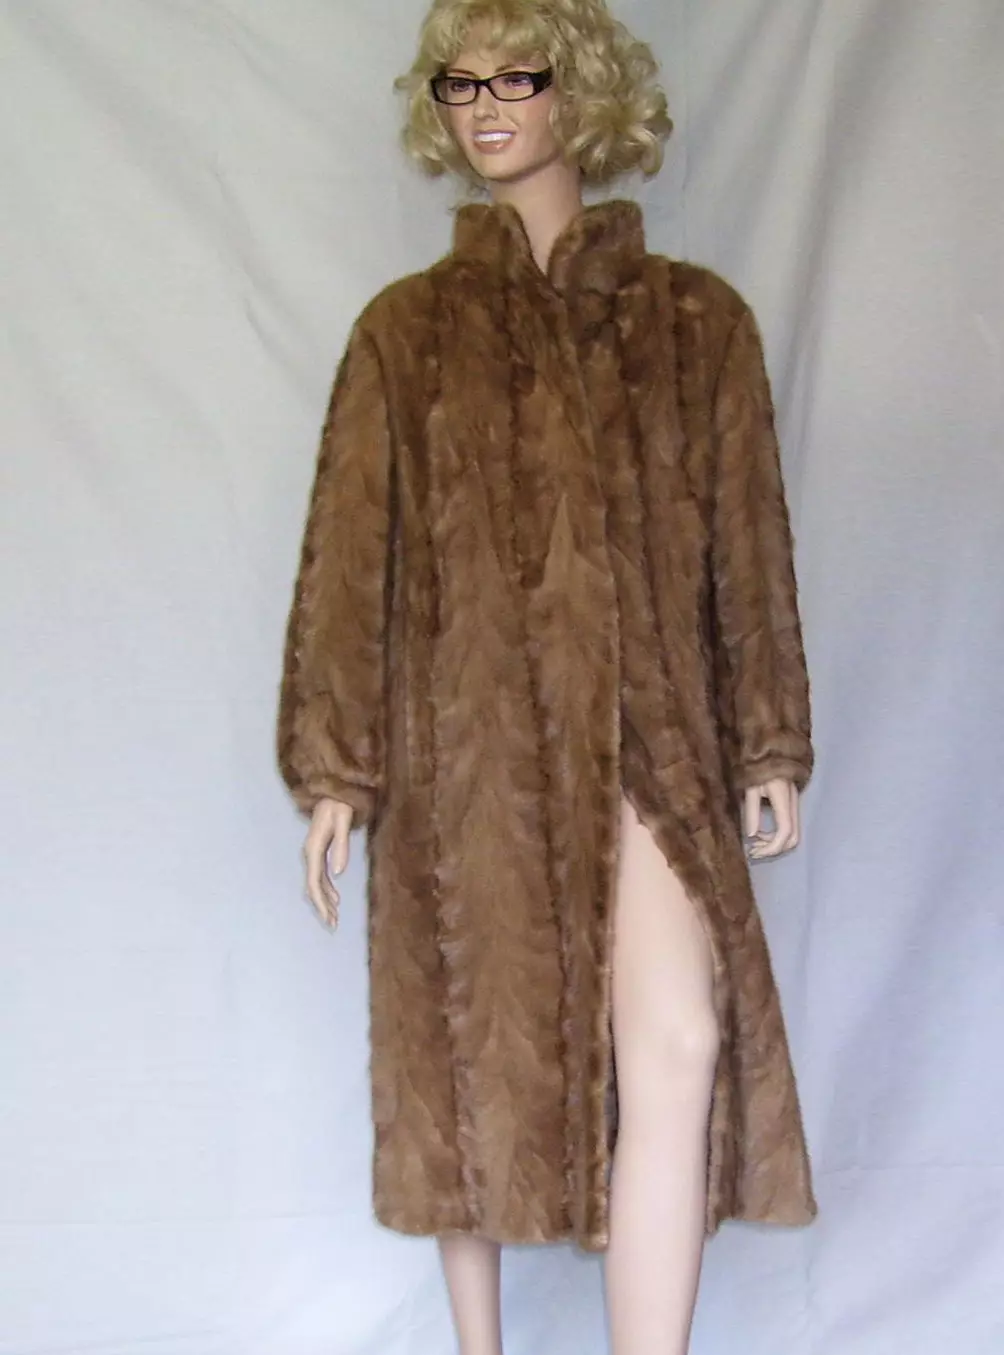 Fur coat mula sa mink pieces (70 mga larawan): Mga Review tungkol sa mink coat pieces habang nagkakahalaga ito 14423_10